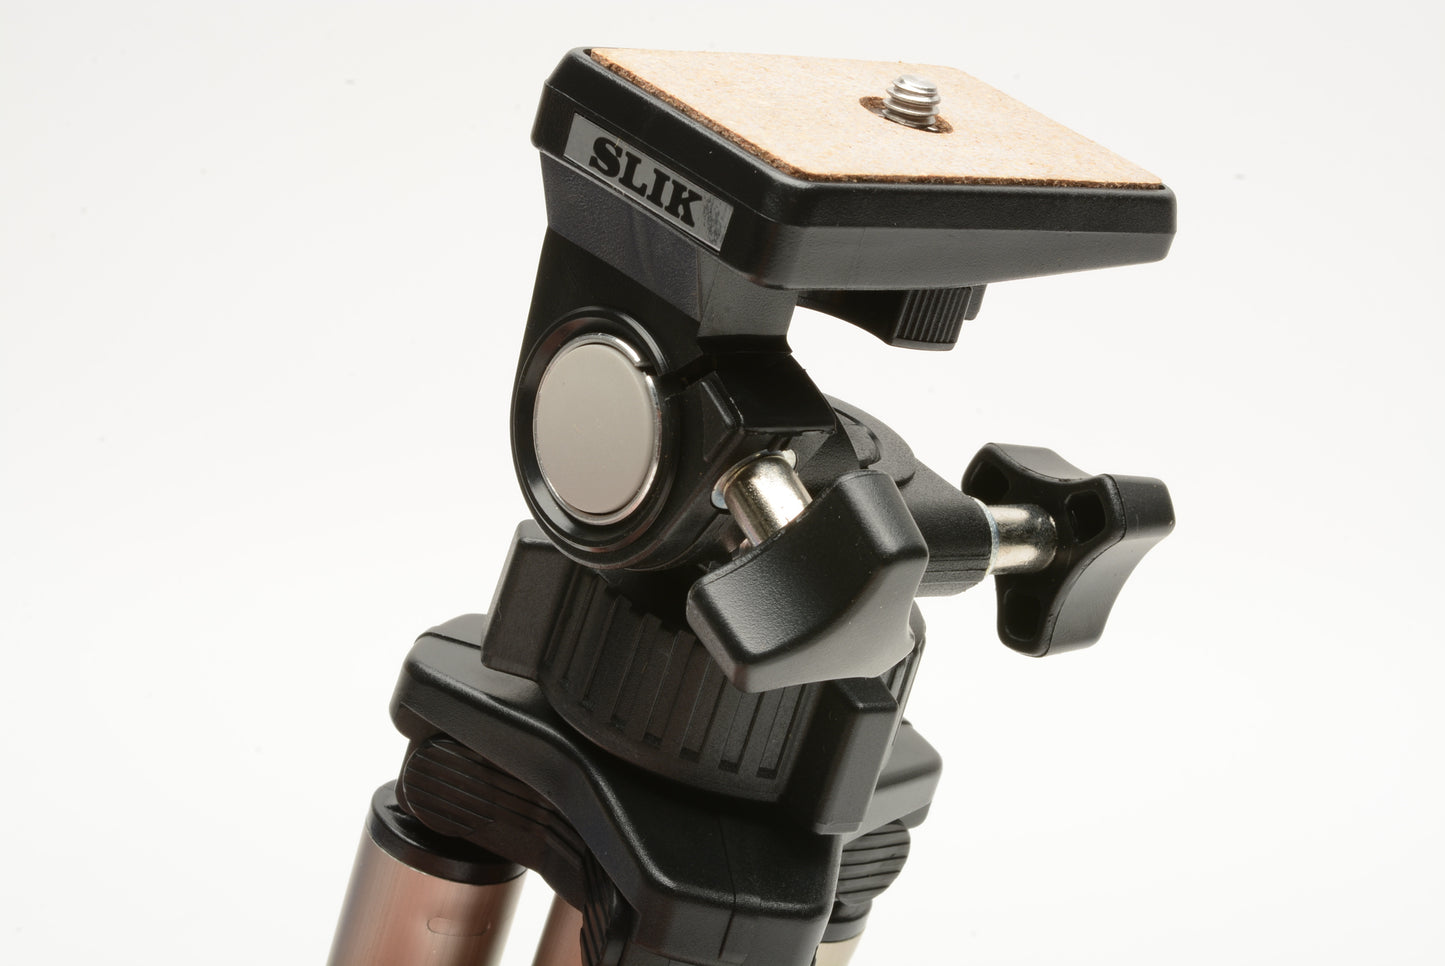 Slik Mini Still digital camera stand tripod, Mint, Boxed